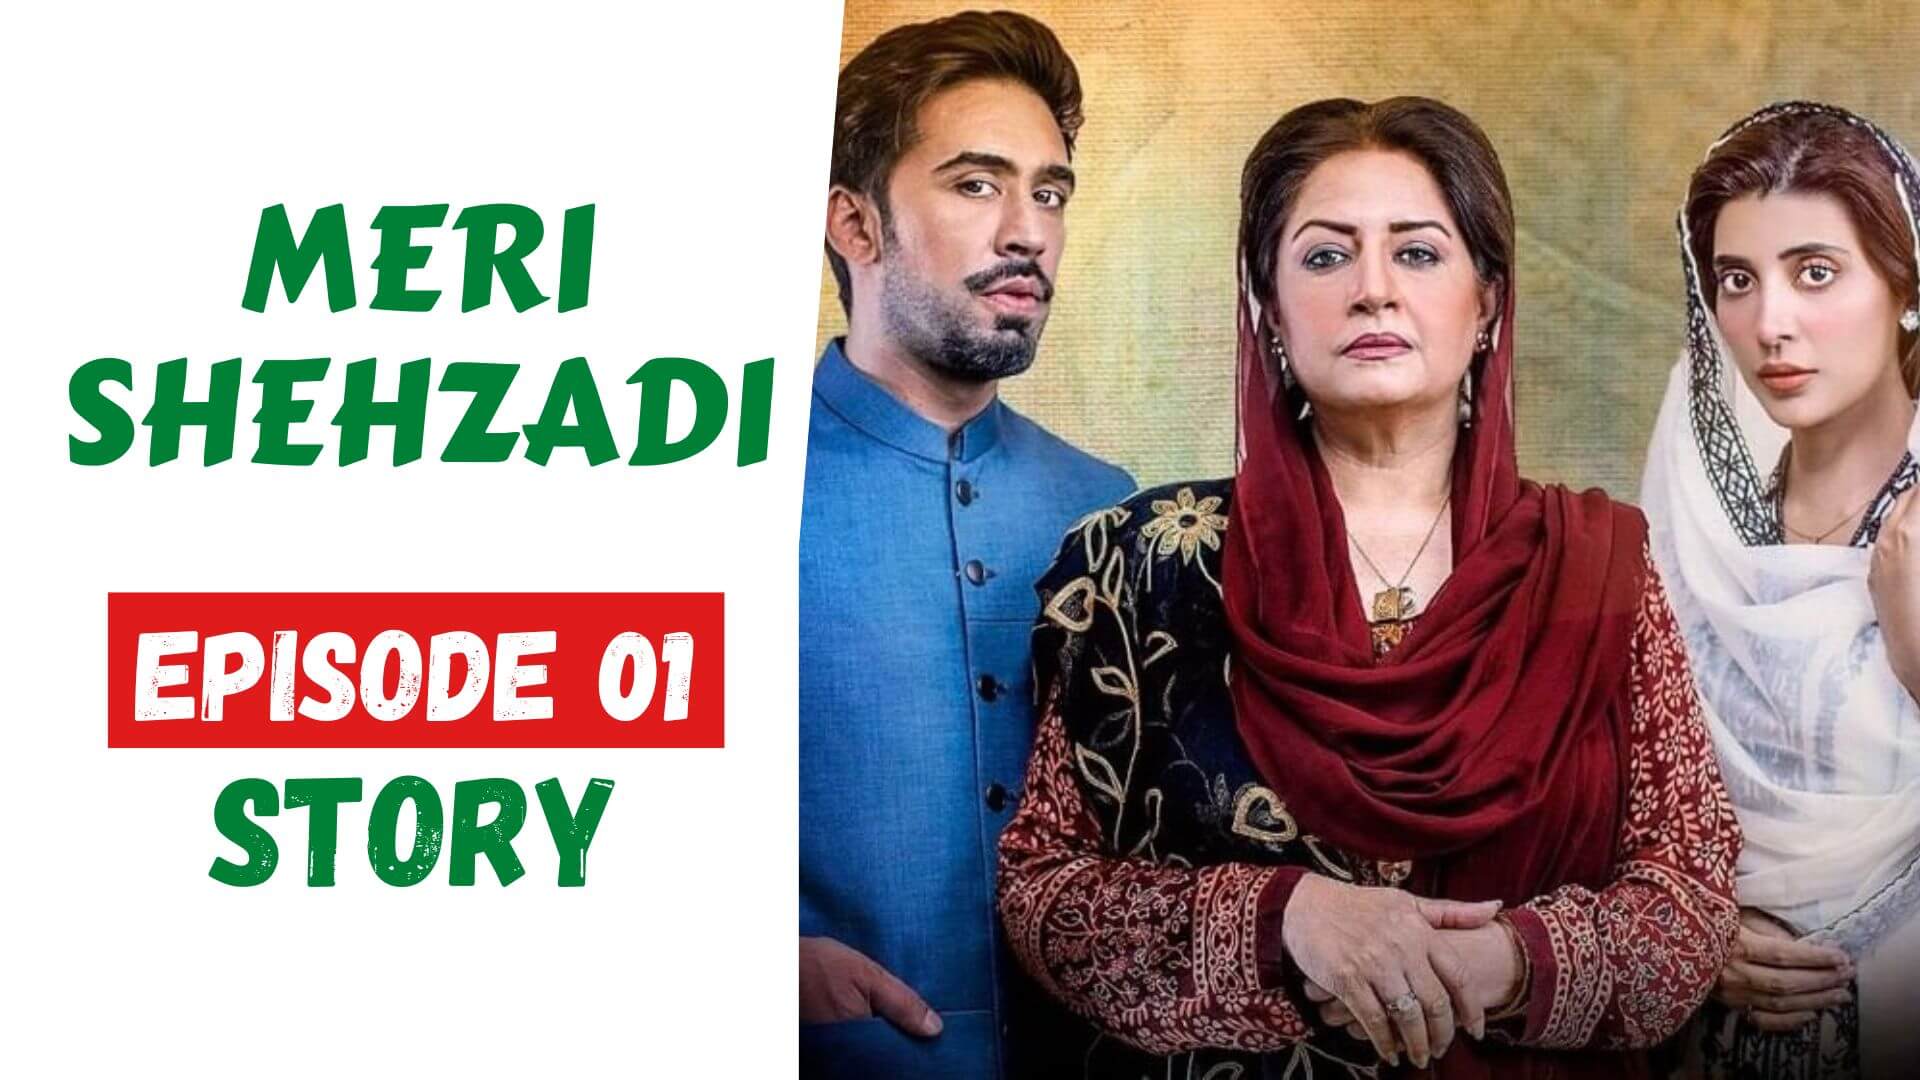 Meri Shehzadi Episode 01 Story